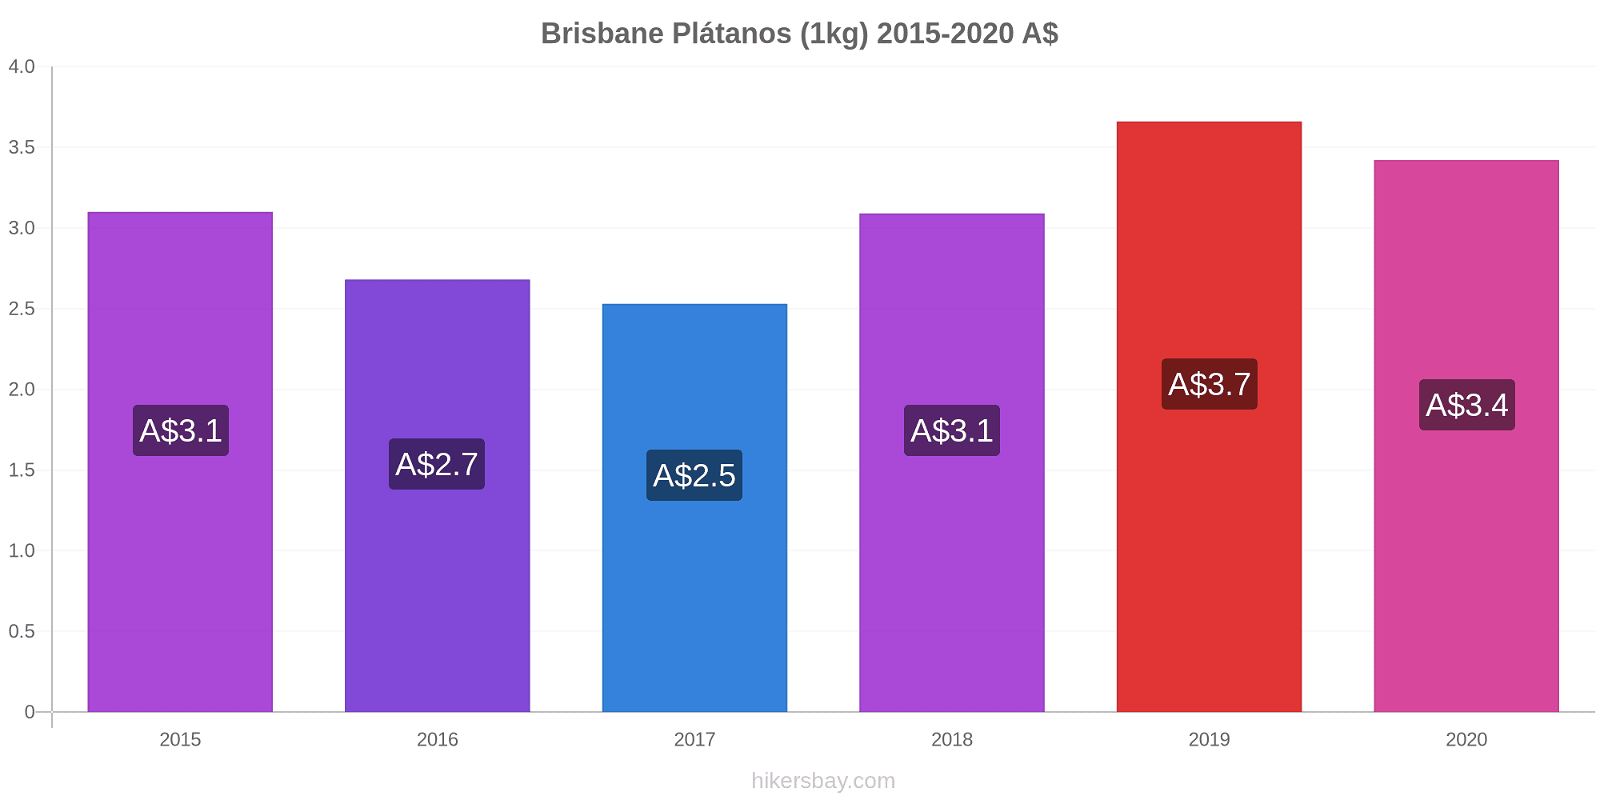 Brisbane cambios de precios Plátano (1kg) hikersbay.com